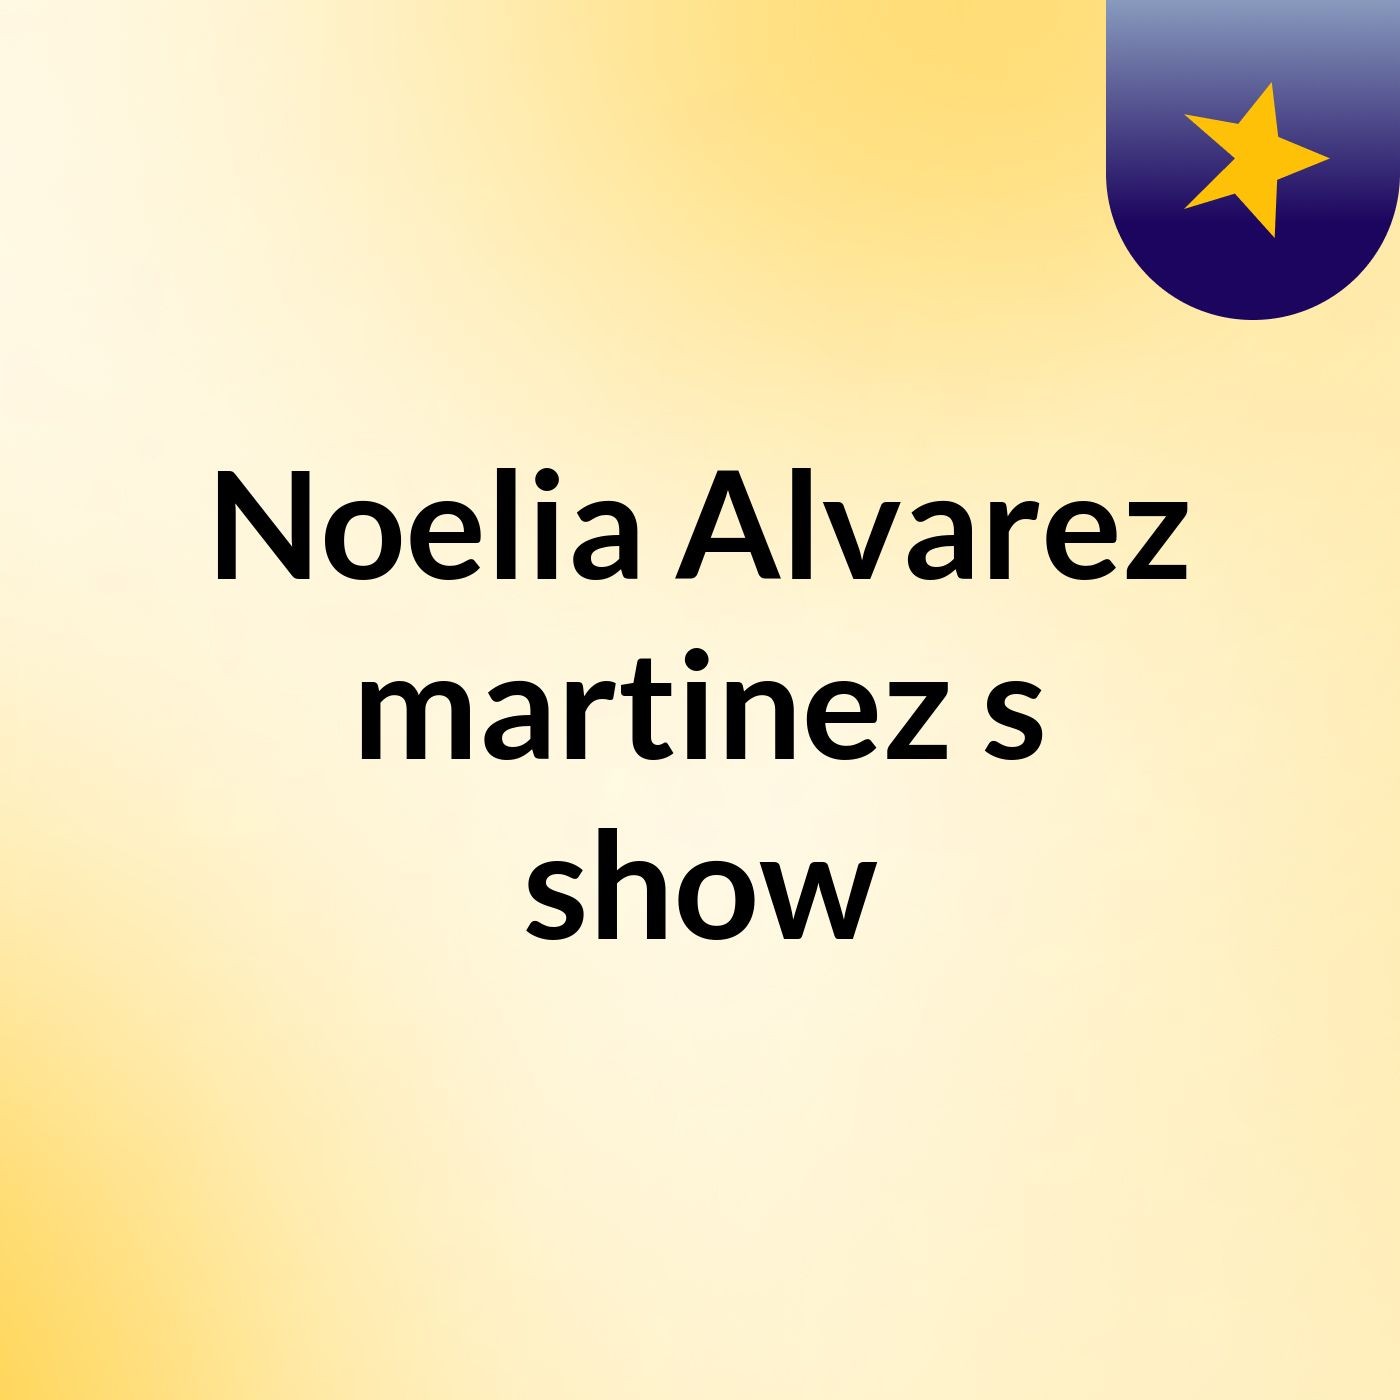 Noelia Alvarez martinez's show